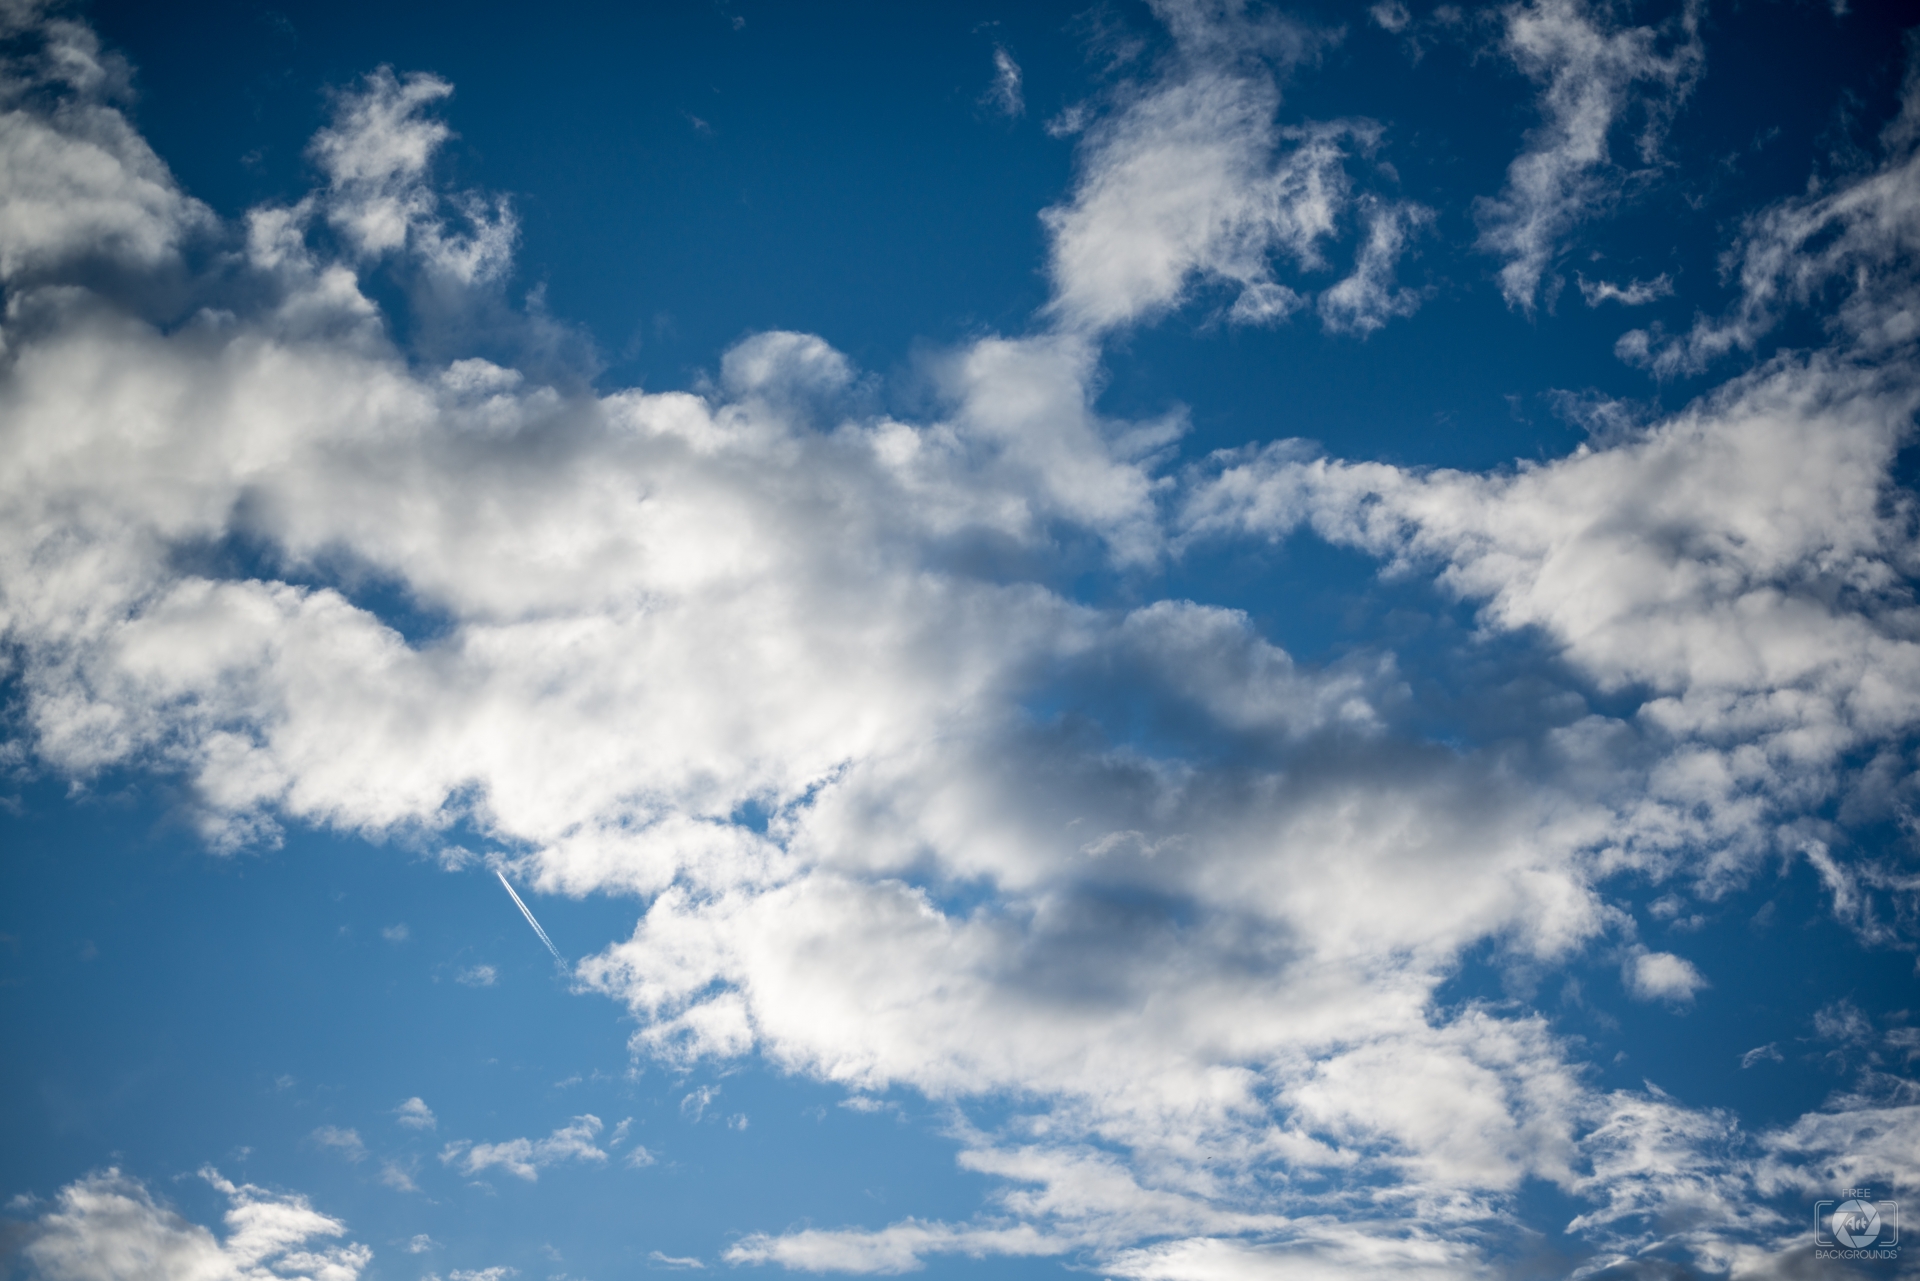 Hình nền miễn phí này sẽ mang lại cho bạn một cảm giác thư giãn và yên bình khi nhìn vào những đám mây trôi qua trên nền trời xanh lam. Với độ nét cao và màu sắc sống động, chắc chắn sẽ làm bạn phấn khích và muốn thưởng thức ngay lập tức.